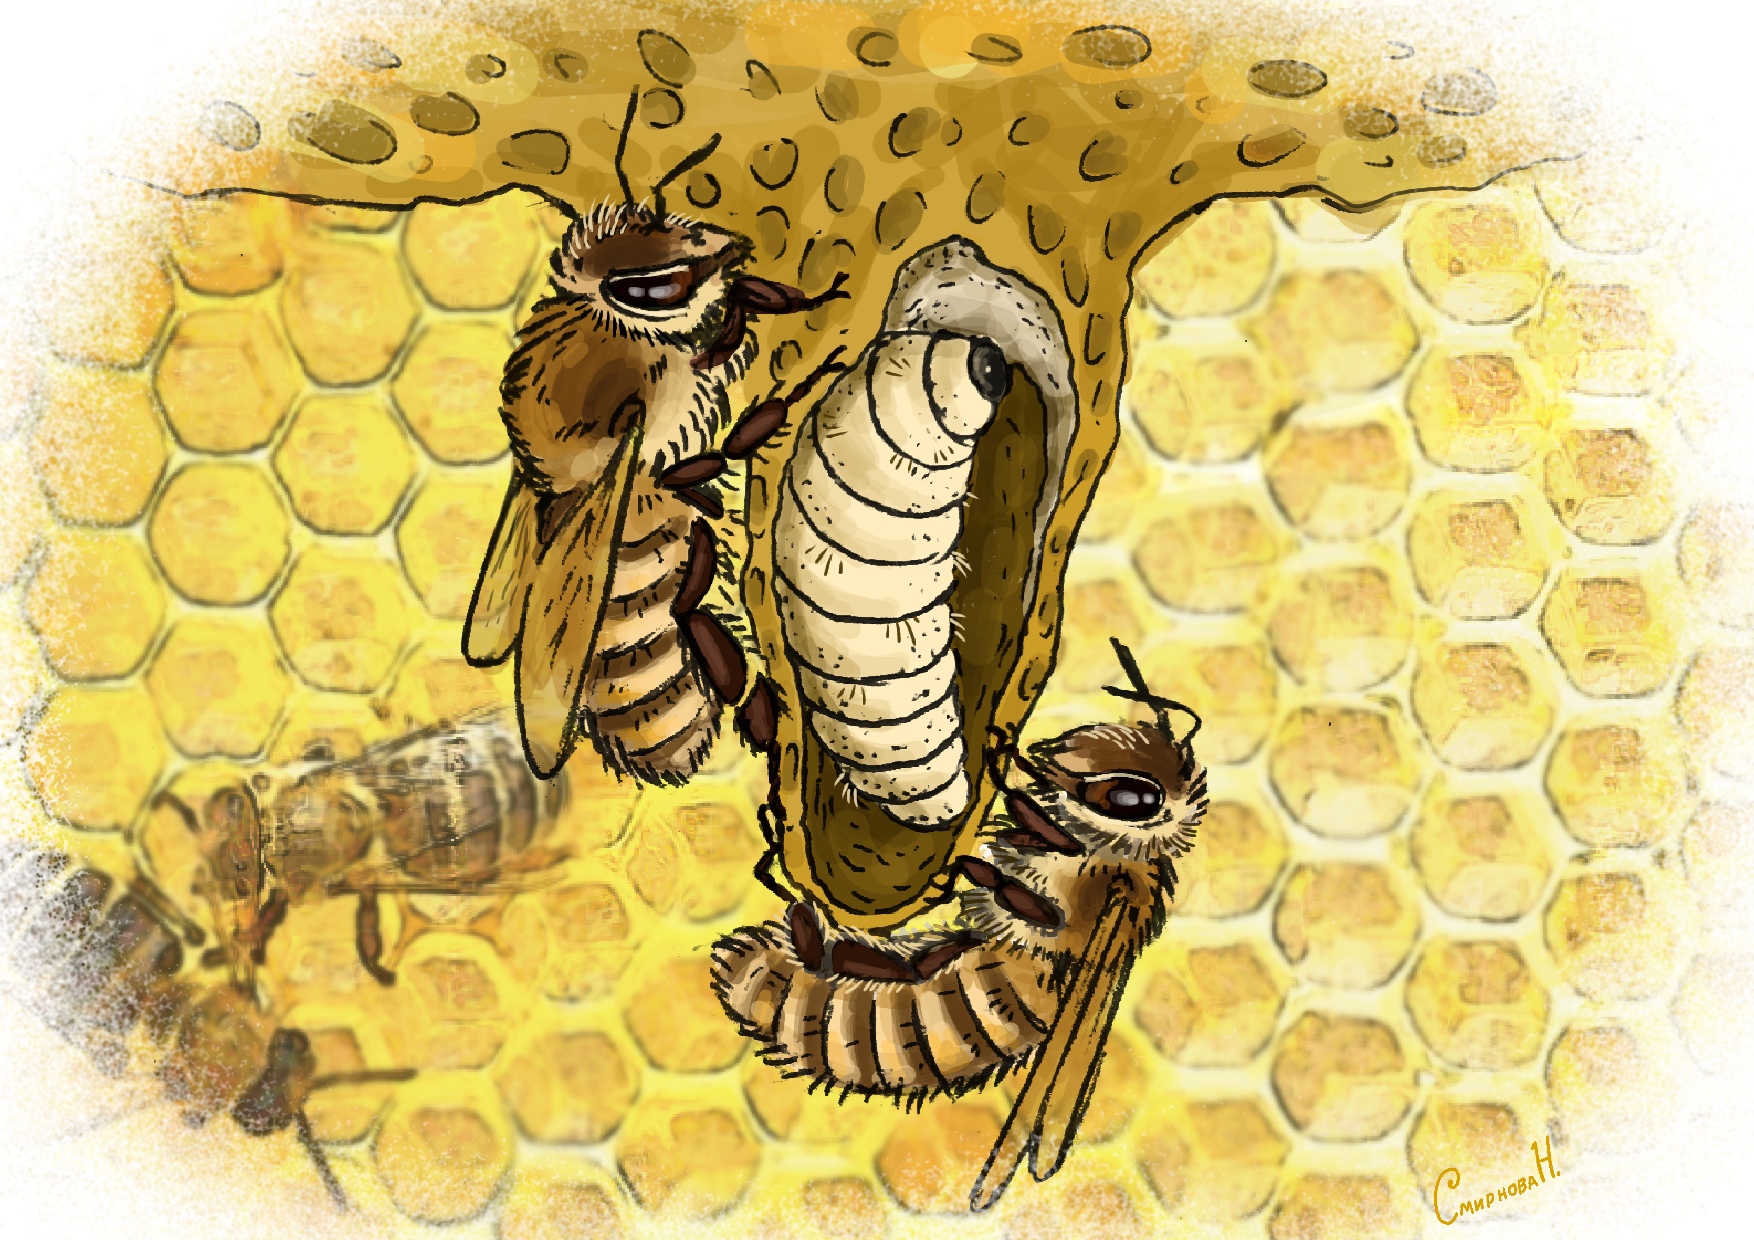 Рисунок нашей художницы Натальи Смирновой. На рисунке показана забота кормилец о протагонисте (пчеле королеве) из  данного рассказа.  Как правило,  любая матка вылупляется в виде гусеницы из отложенного яйца через три дня, которую, пчёлы до запечатывания маточника кормят молочком. Это молочко содержит особые белки, отвечающие за развитие личинки в матку. Личинка быстро растёт, и через 8,5—9 дней после того, как было отложено яйцо, пчёлы запечатывают маточник пористой крышечкой из смеси воска и перги. В запечатанном маточнике личинка в течение 7,5—8 дней превращается в куколку, а затем во взрослое насекомое — молодую матку. Таким образом, развитие матки от яйца до взрослого насекомого длится 16—17 суток. В нашем случае королева стала половозрелой раньше в результате художественной условности.